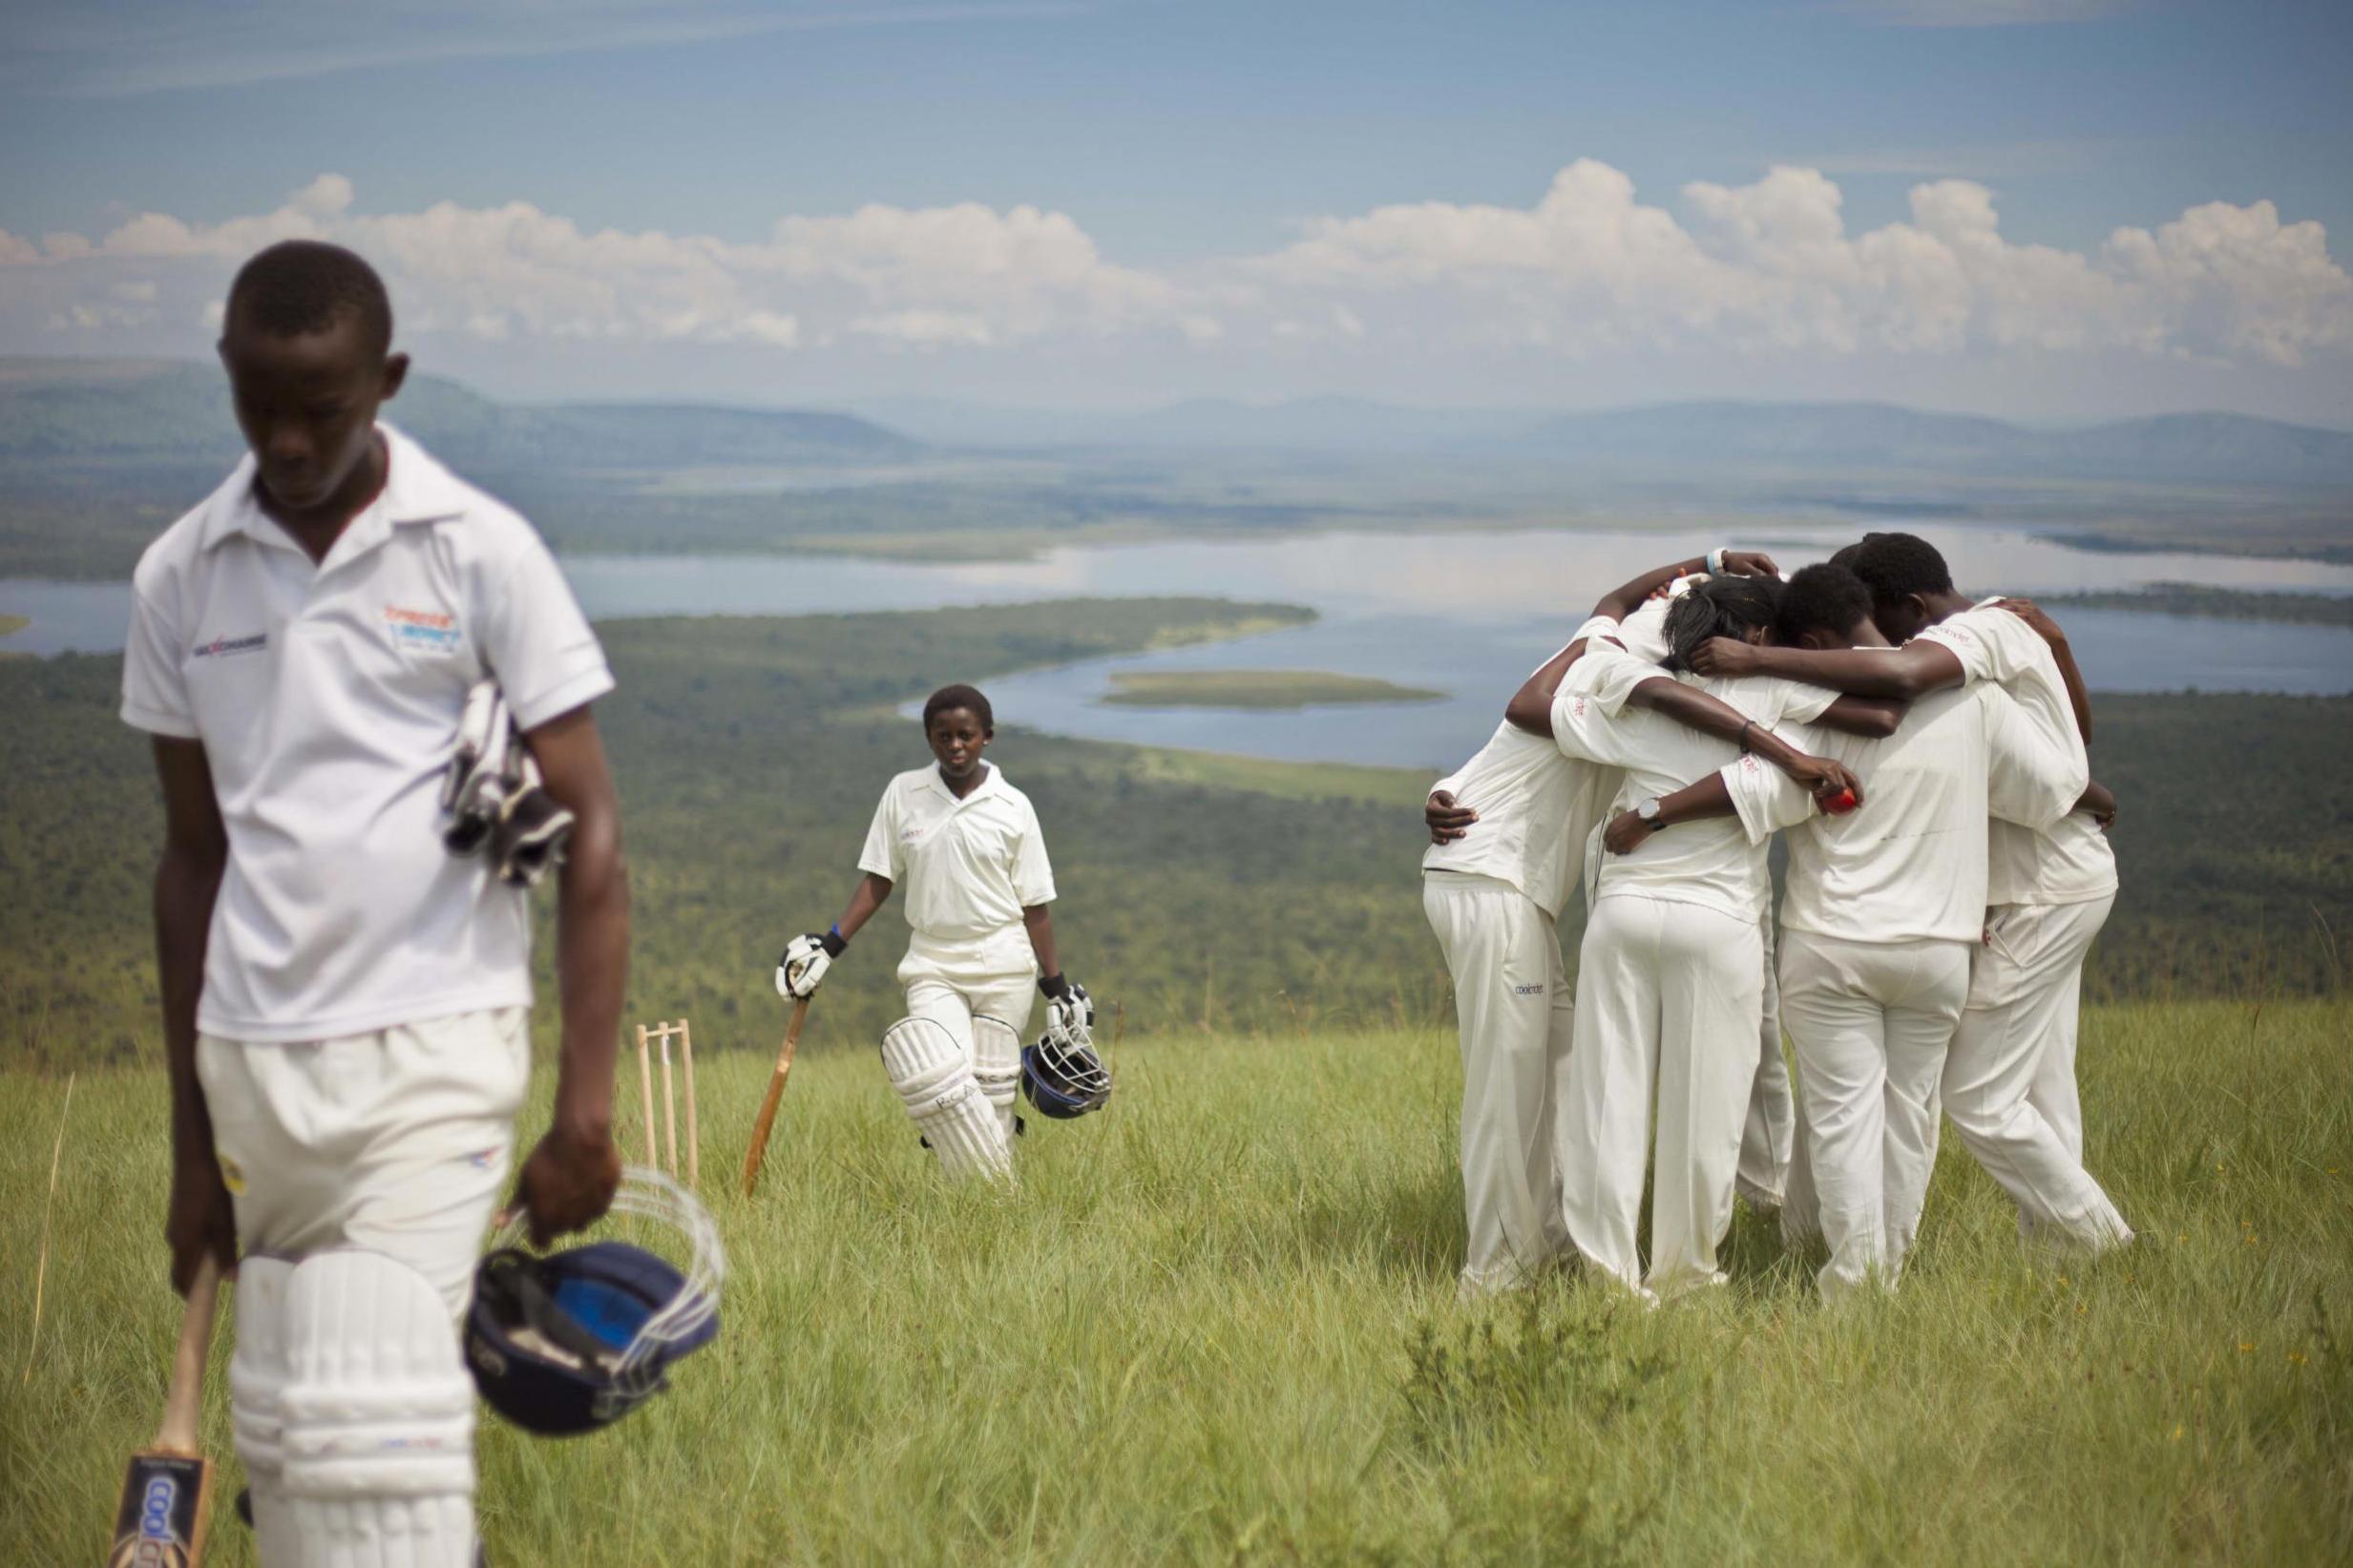 Cricket is the fastest-growing sport in Rwanda